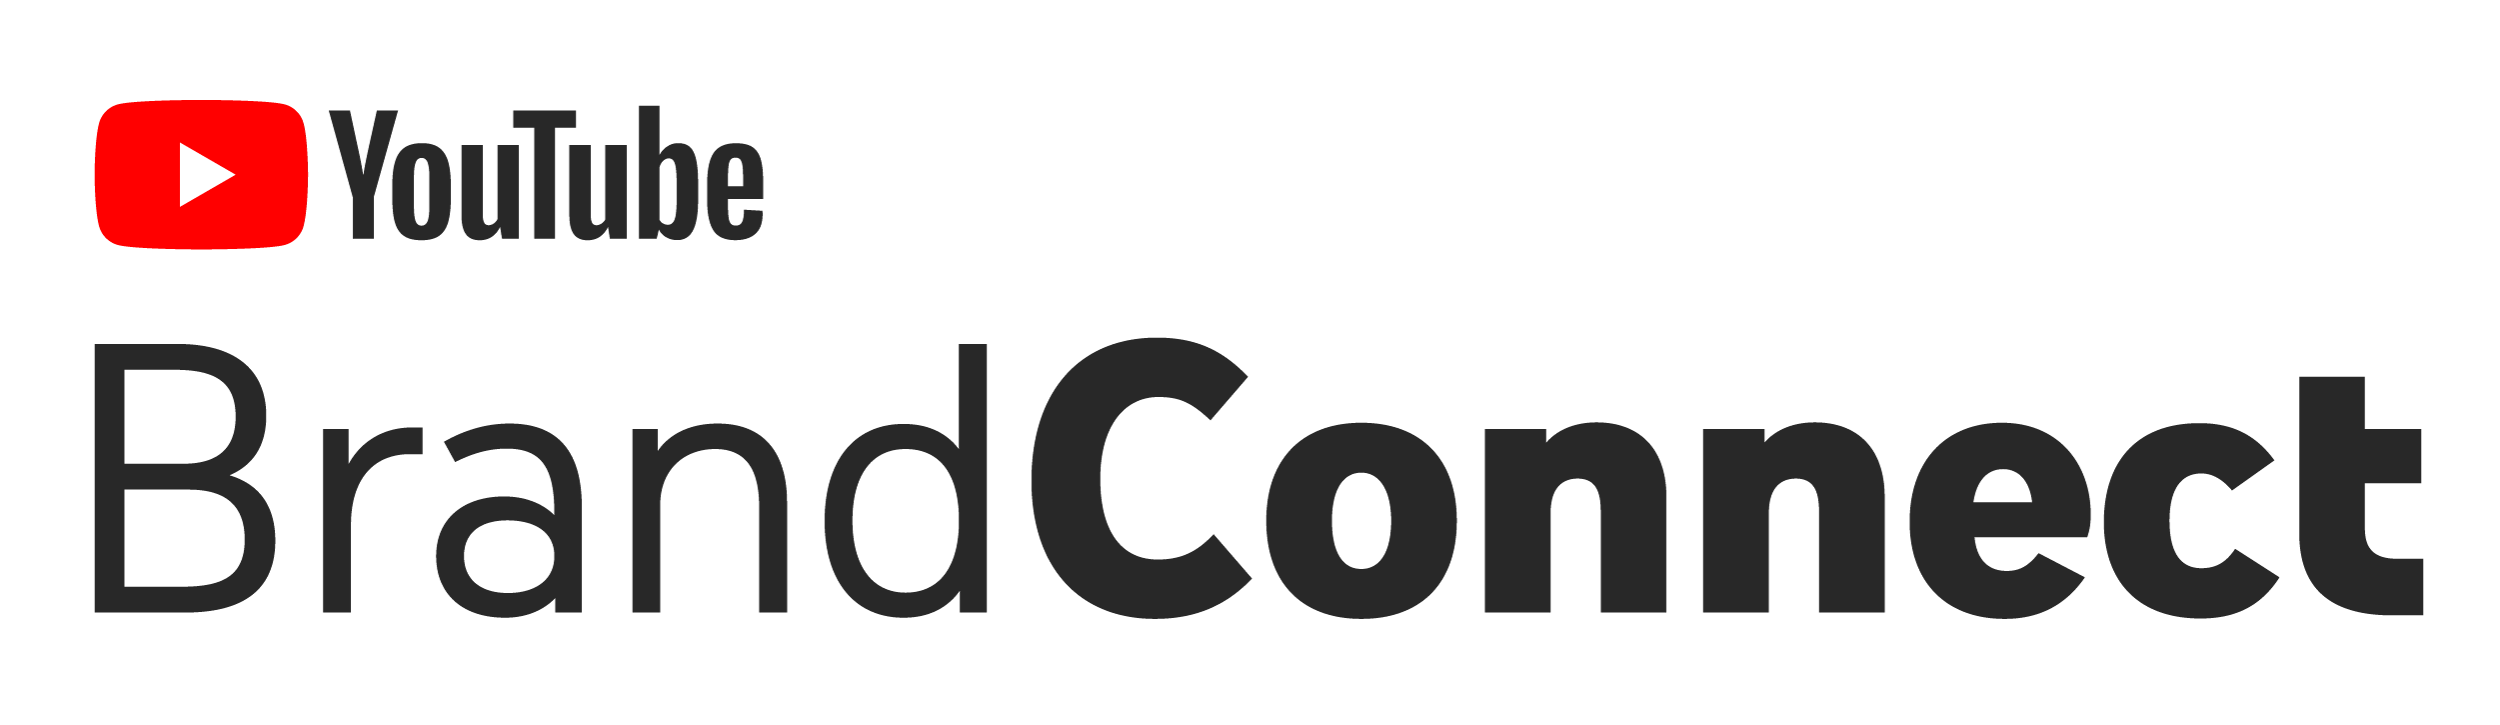 yt_brandconnect-logo-black-9642190